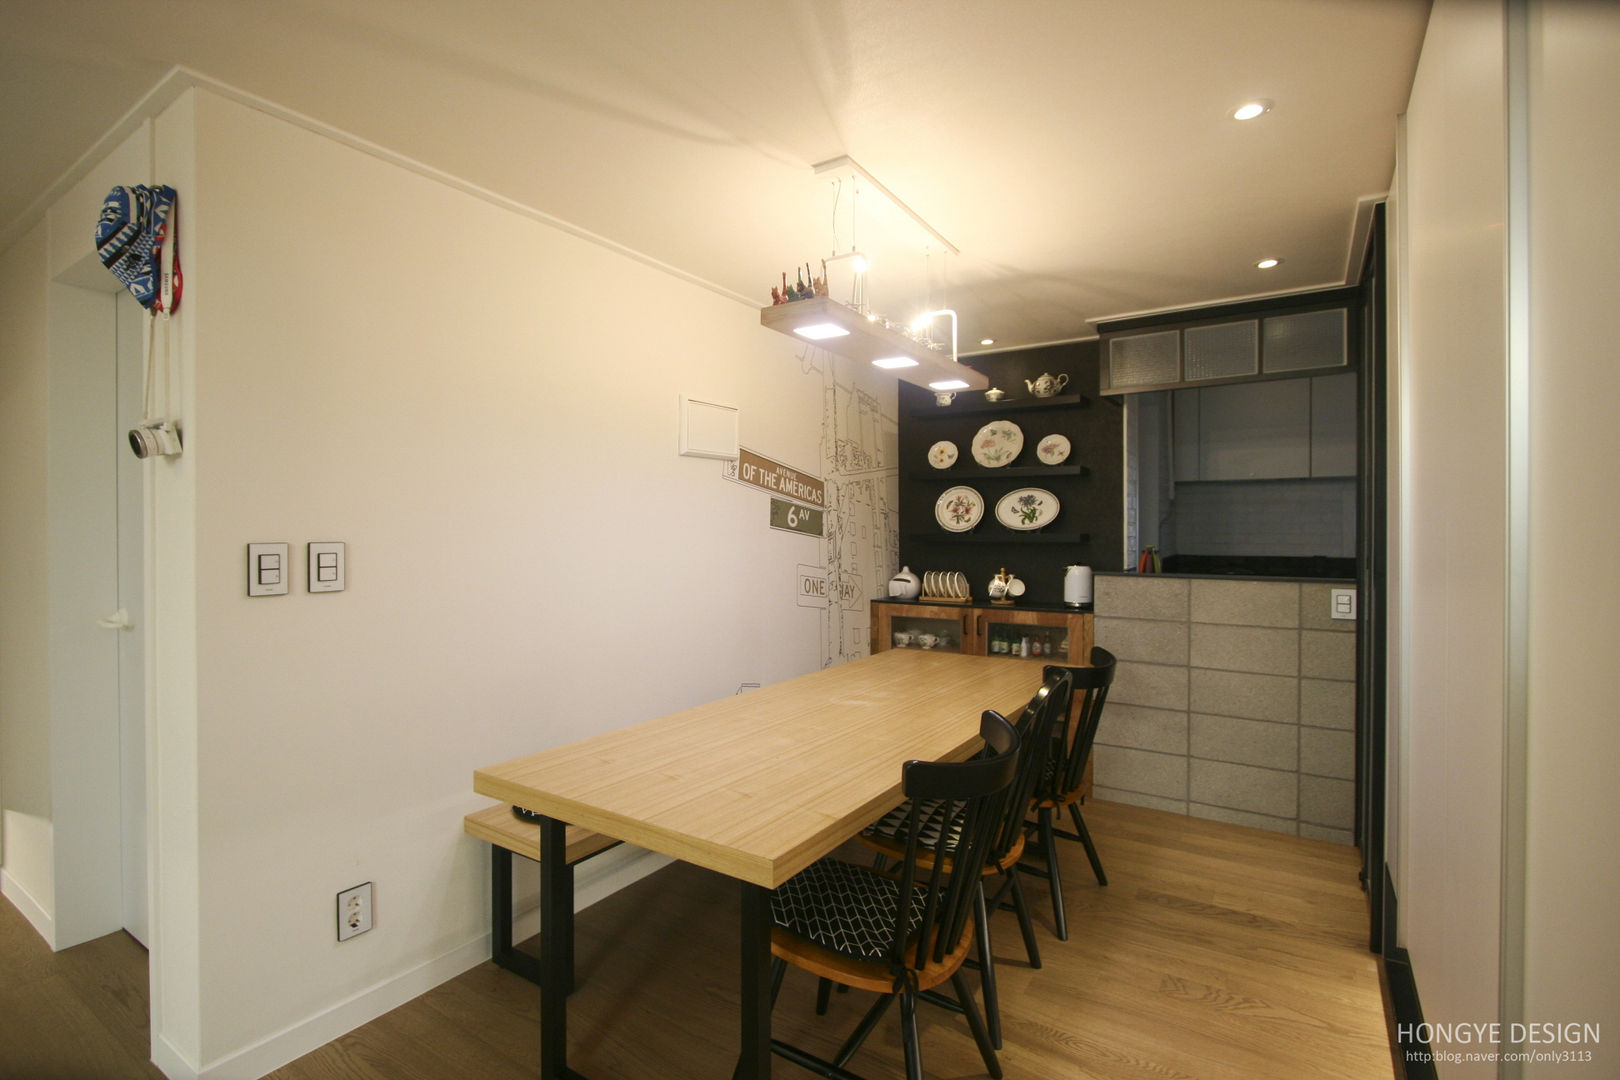 120인치 스크린이 우리집 거실에, 40py 모던한 인테리어 , 홍예디자인 홍예디자인 Modern dining room